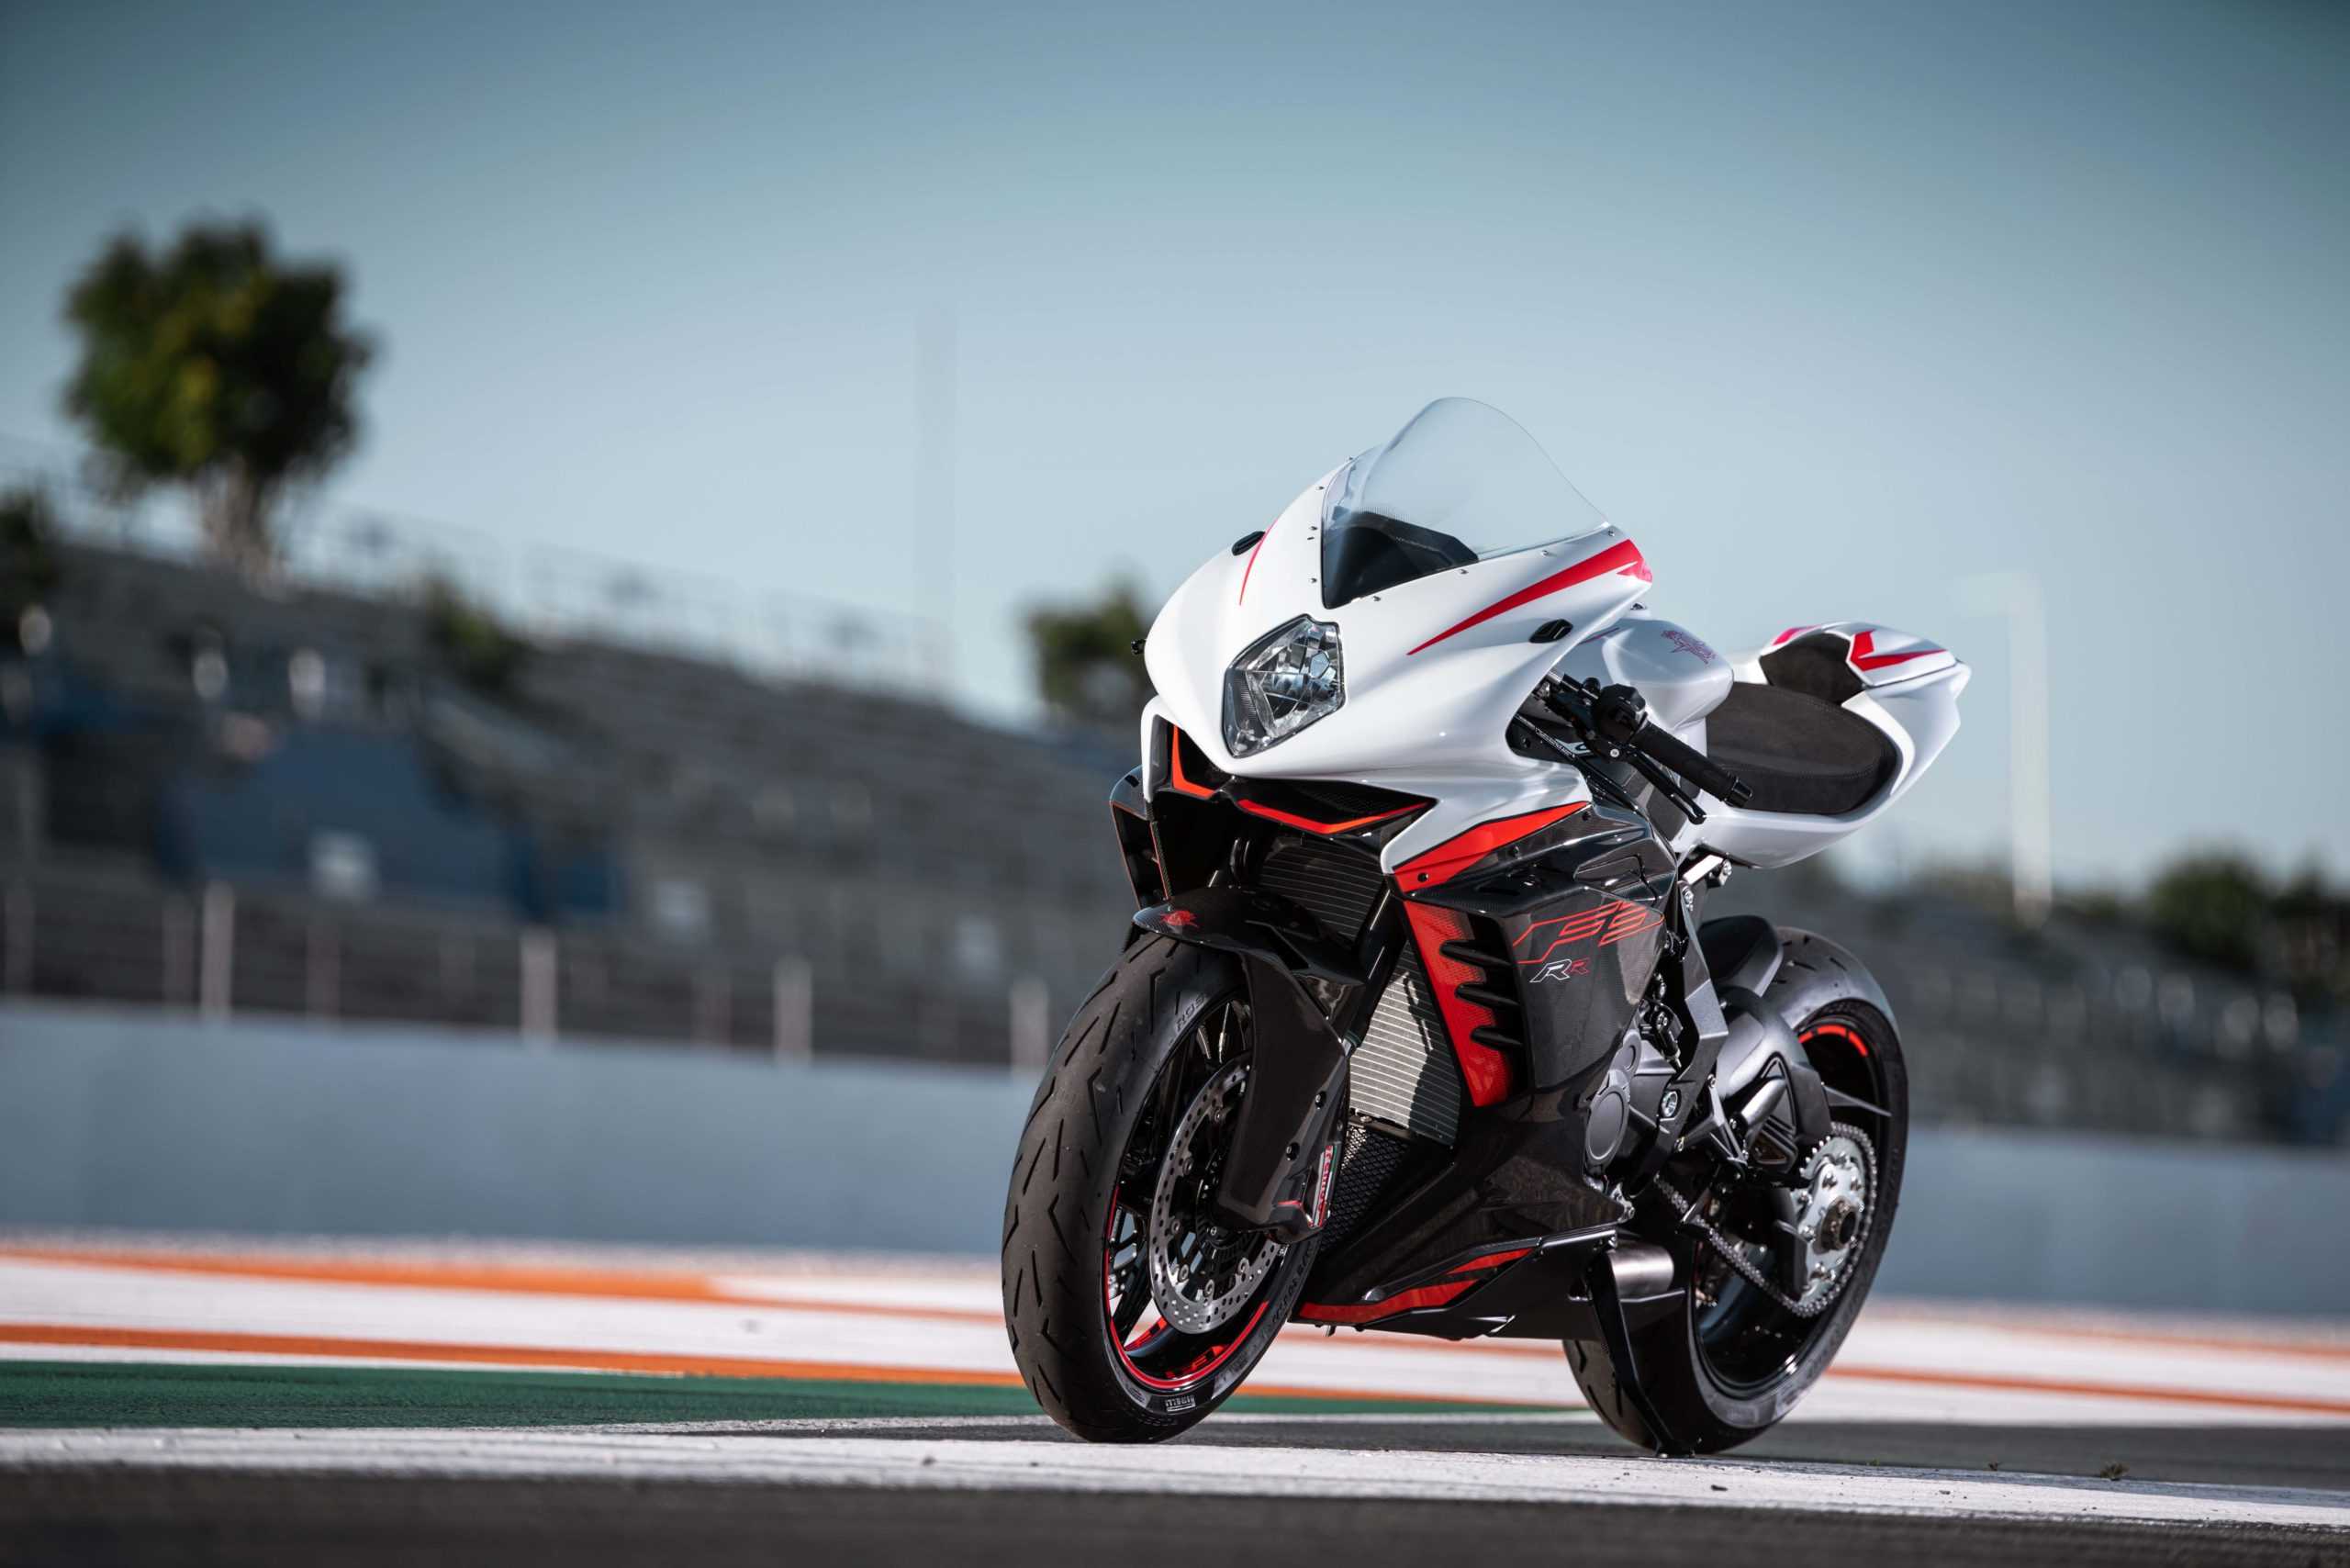 Самый быстрый мотоцикл в мире по скорости: рейтинг за 2021 год, фото, видео